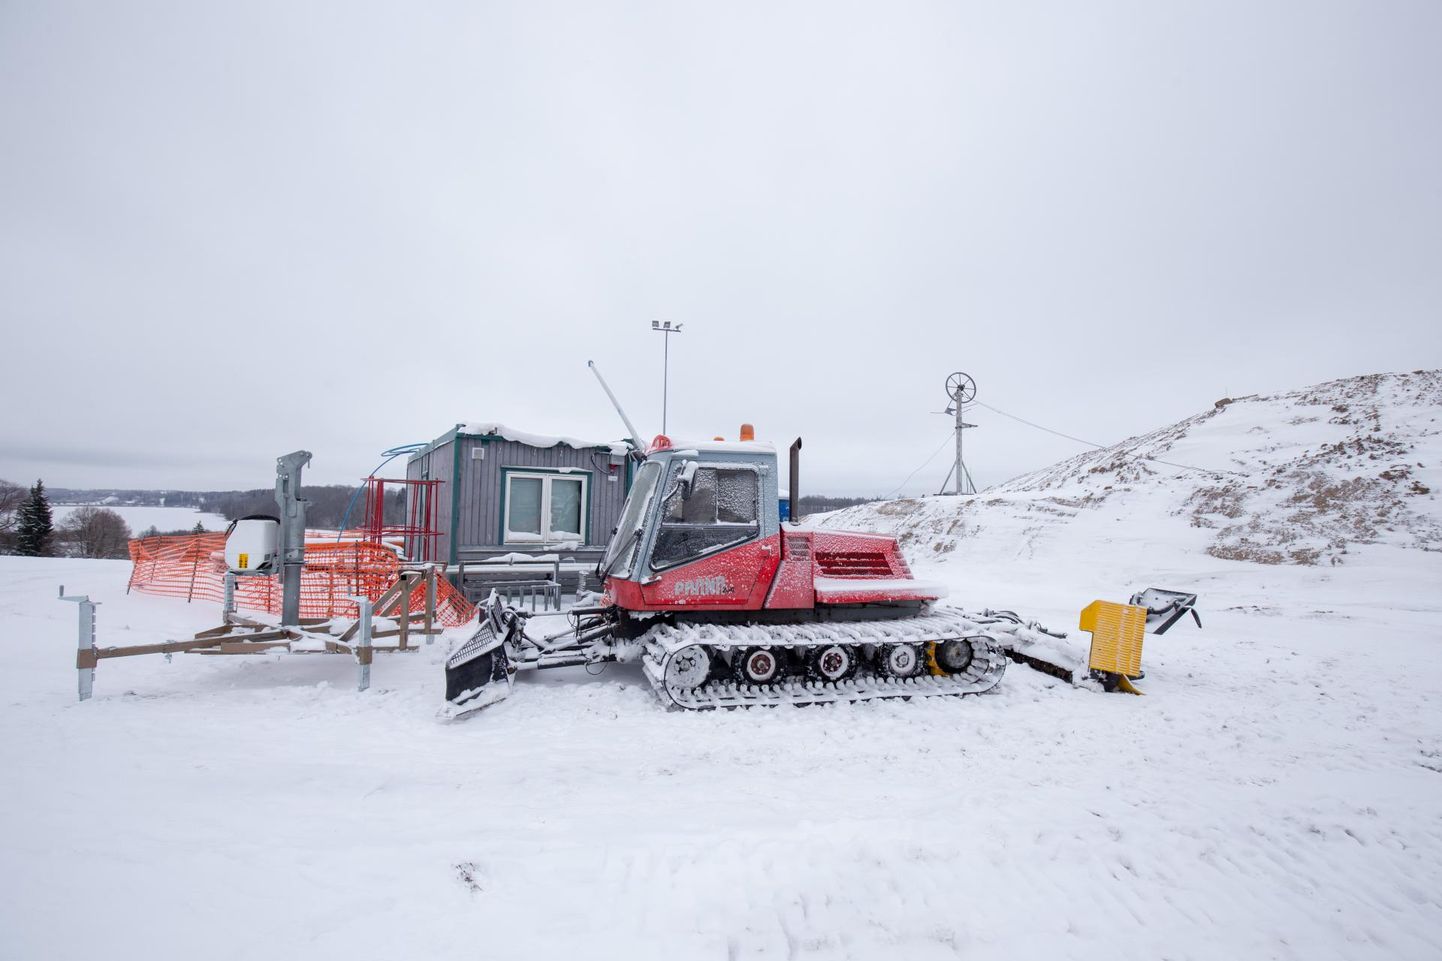 Maha sadanud lumi toob rõõmu suusatajatele ja tööd rajameistritele. Viljandi lumepargis tehakse ettevalmistusi avamiseks.